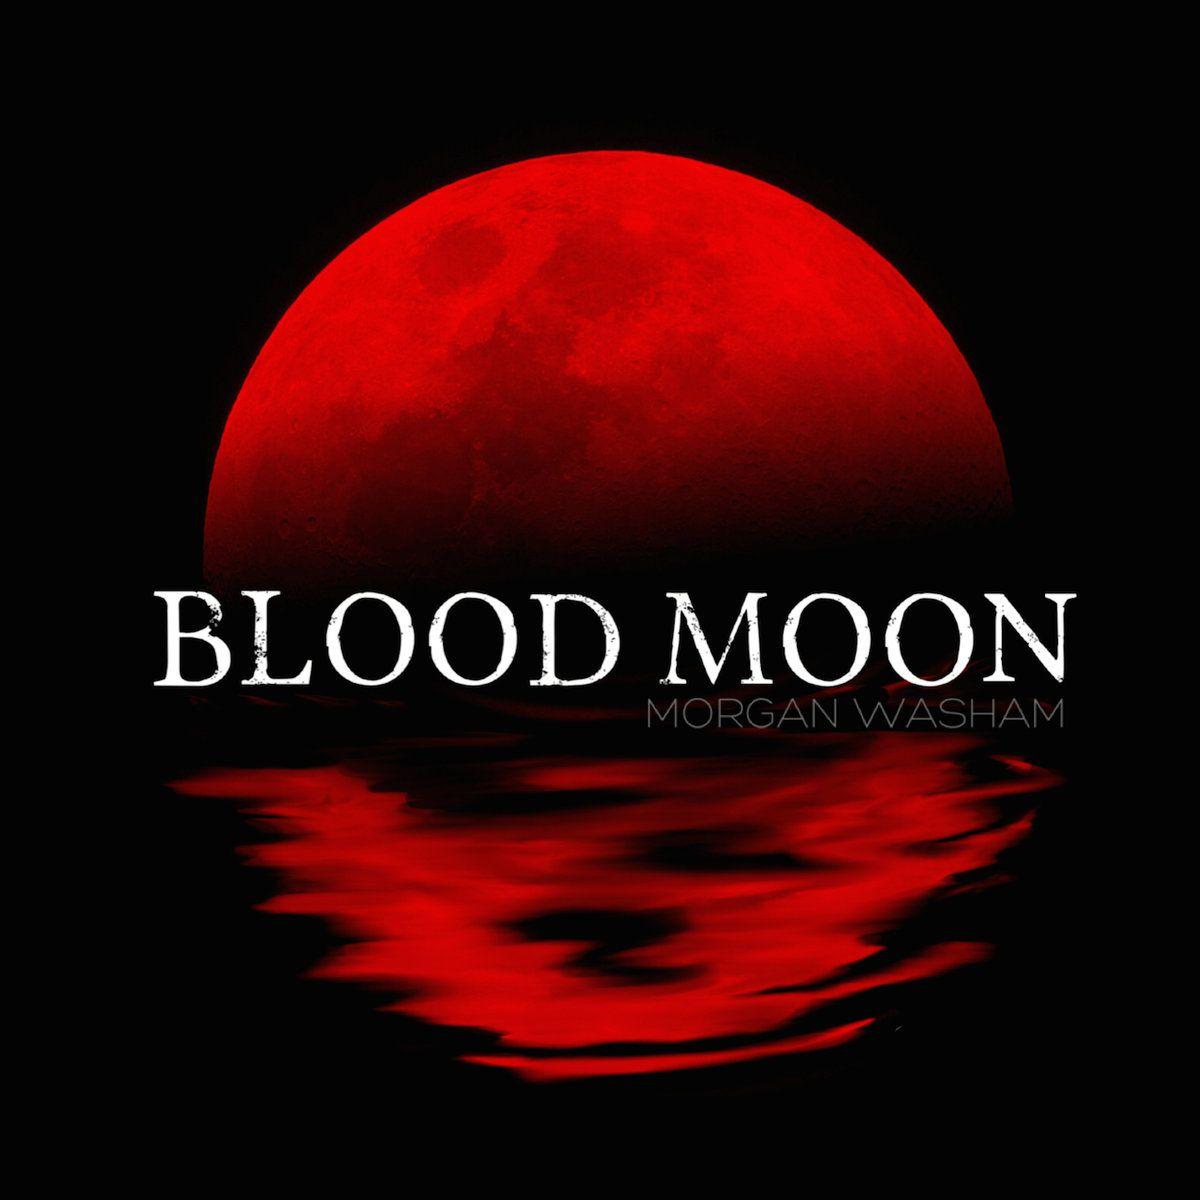 Red Moon Logo - Blood Moon. Morgan Washam and Blood Moon